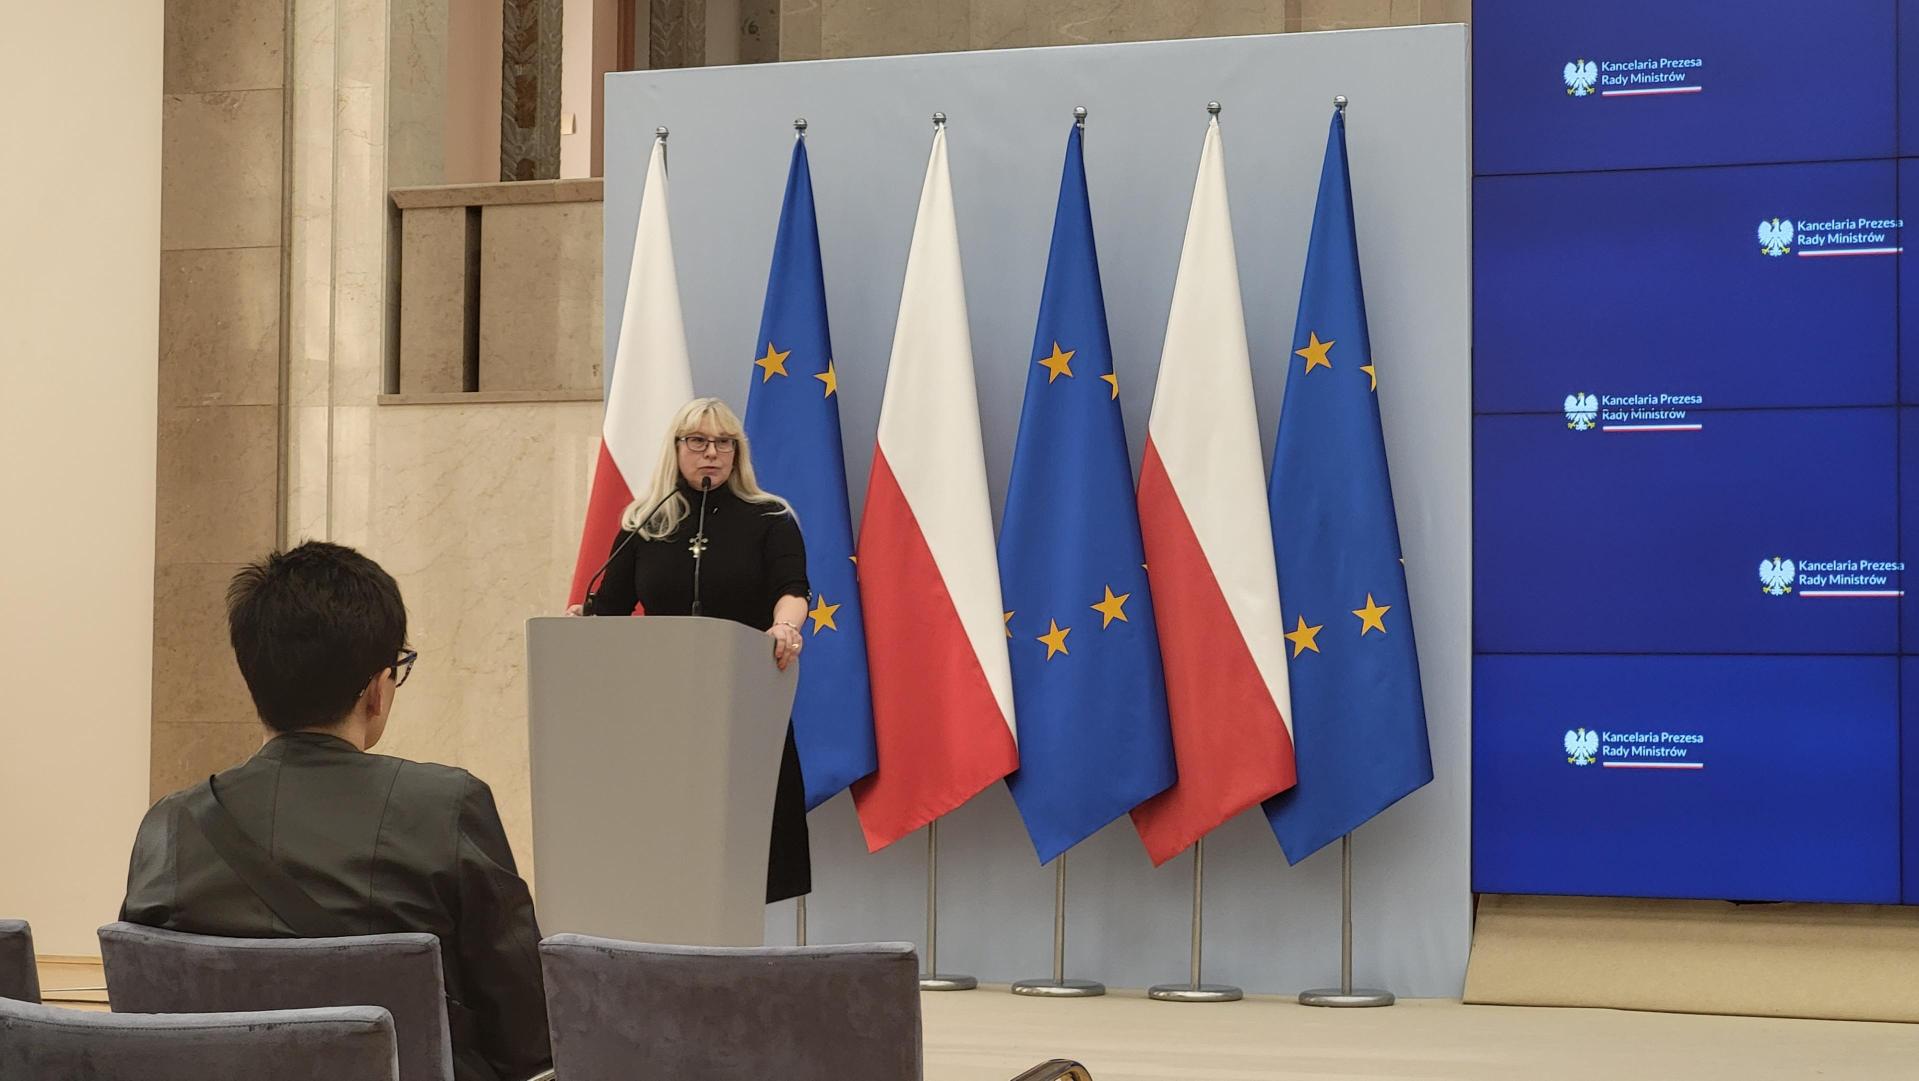 Scena z mównicą przy której stoi Dr. Agnieszka Partridge, w tle flagi Polski i UE. Obok duży ekran do prezentacji